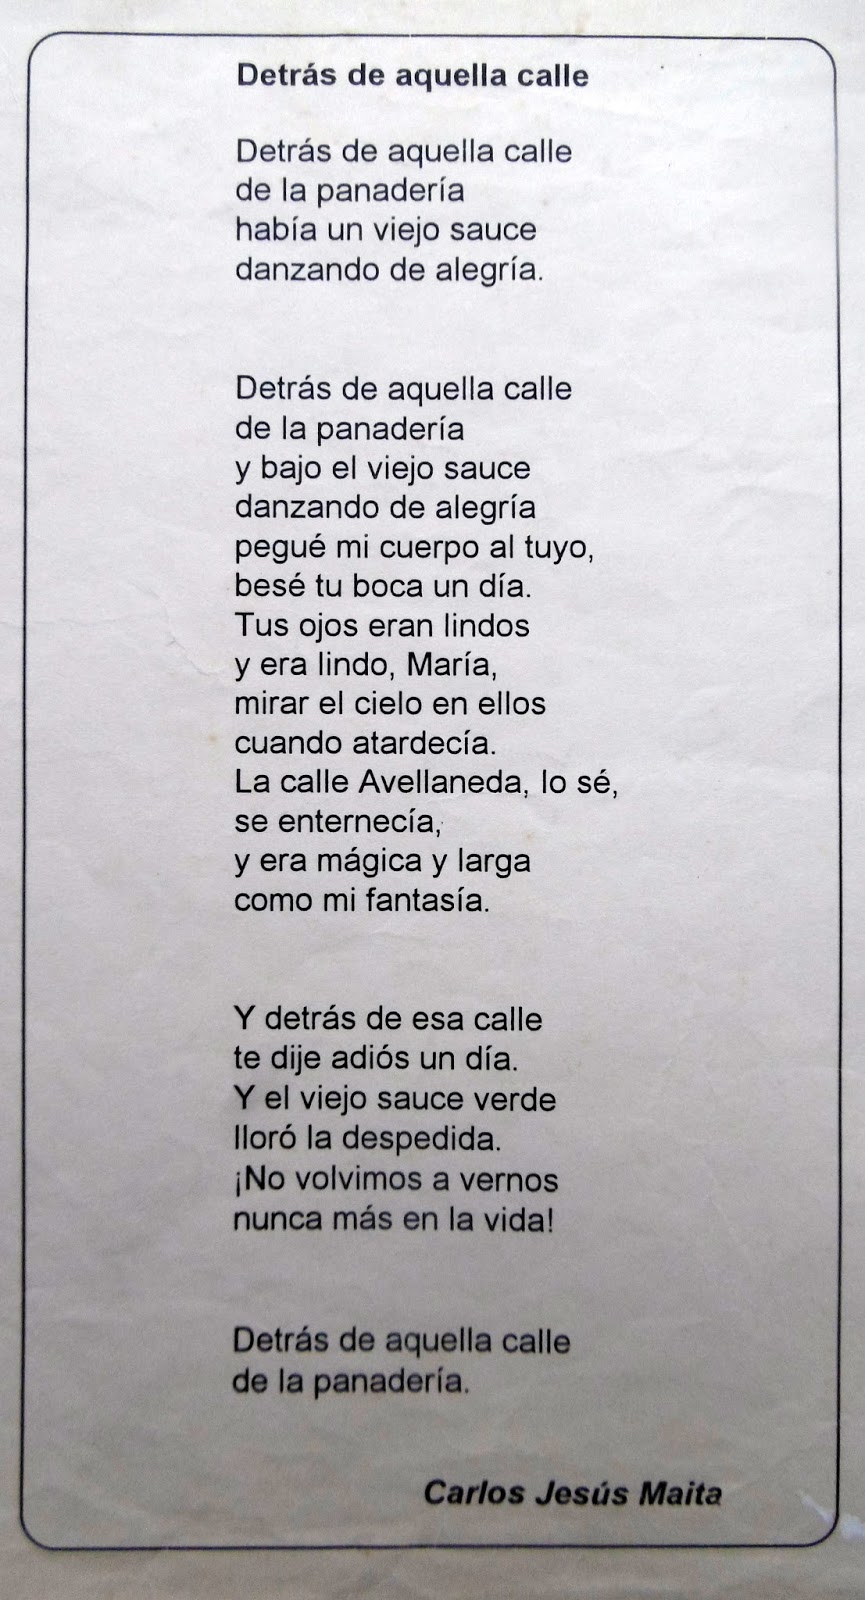 Carlos Jesús Maita - Historia y Literatura: 